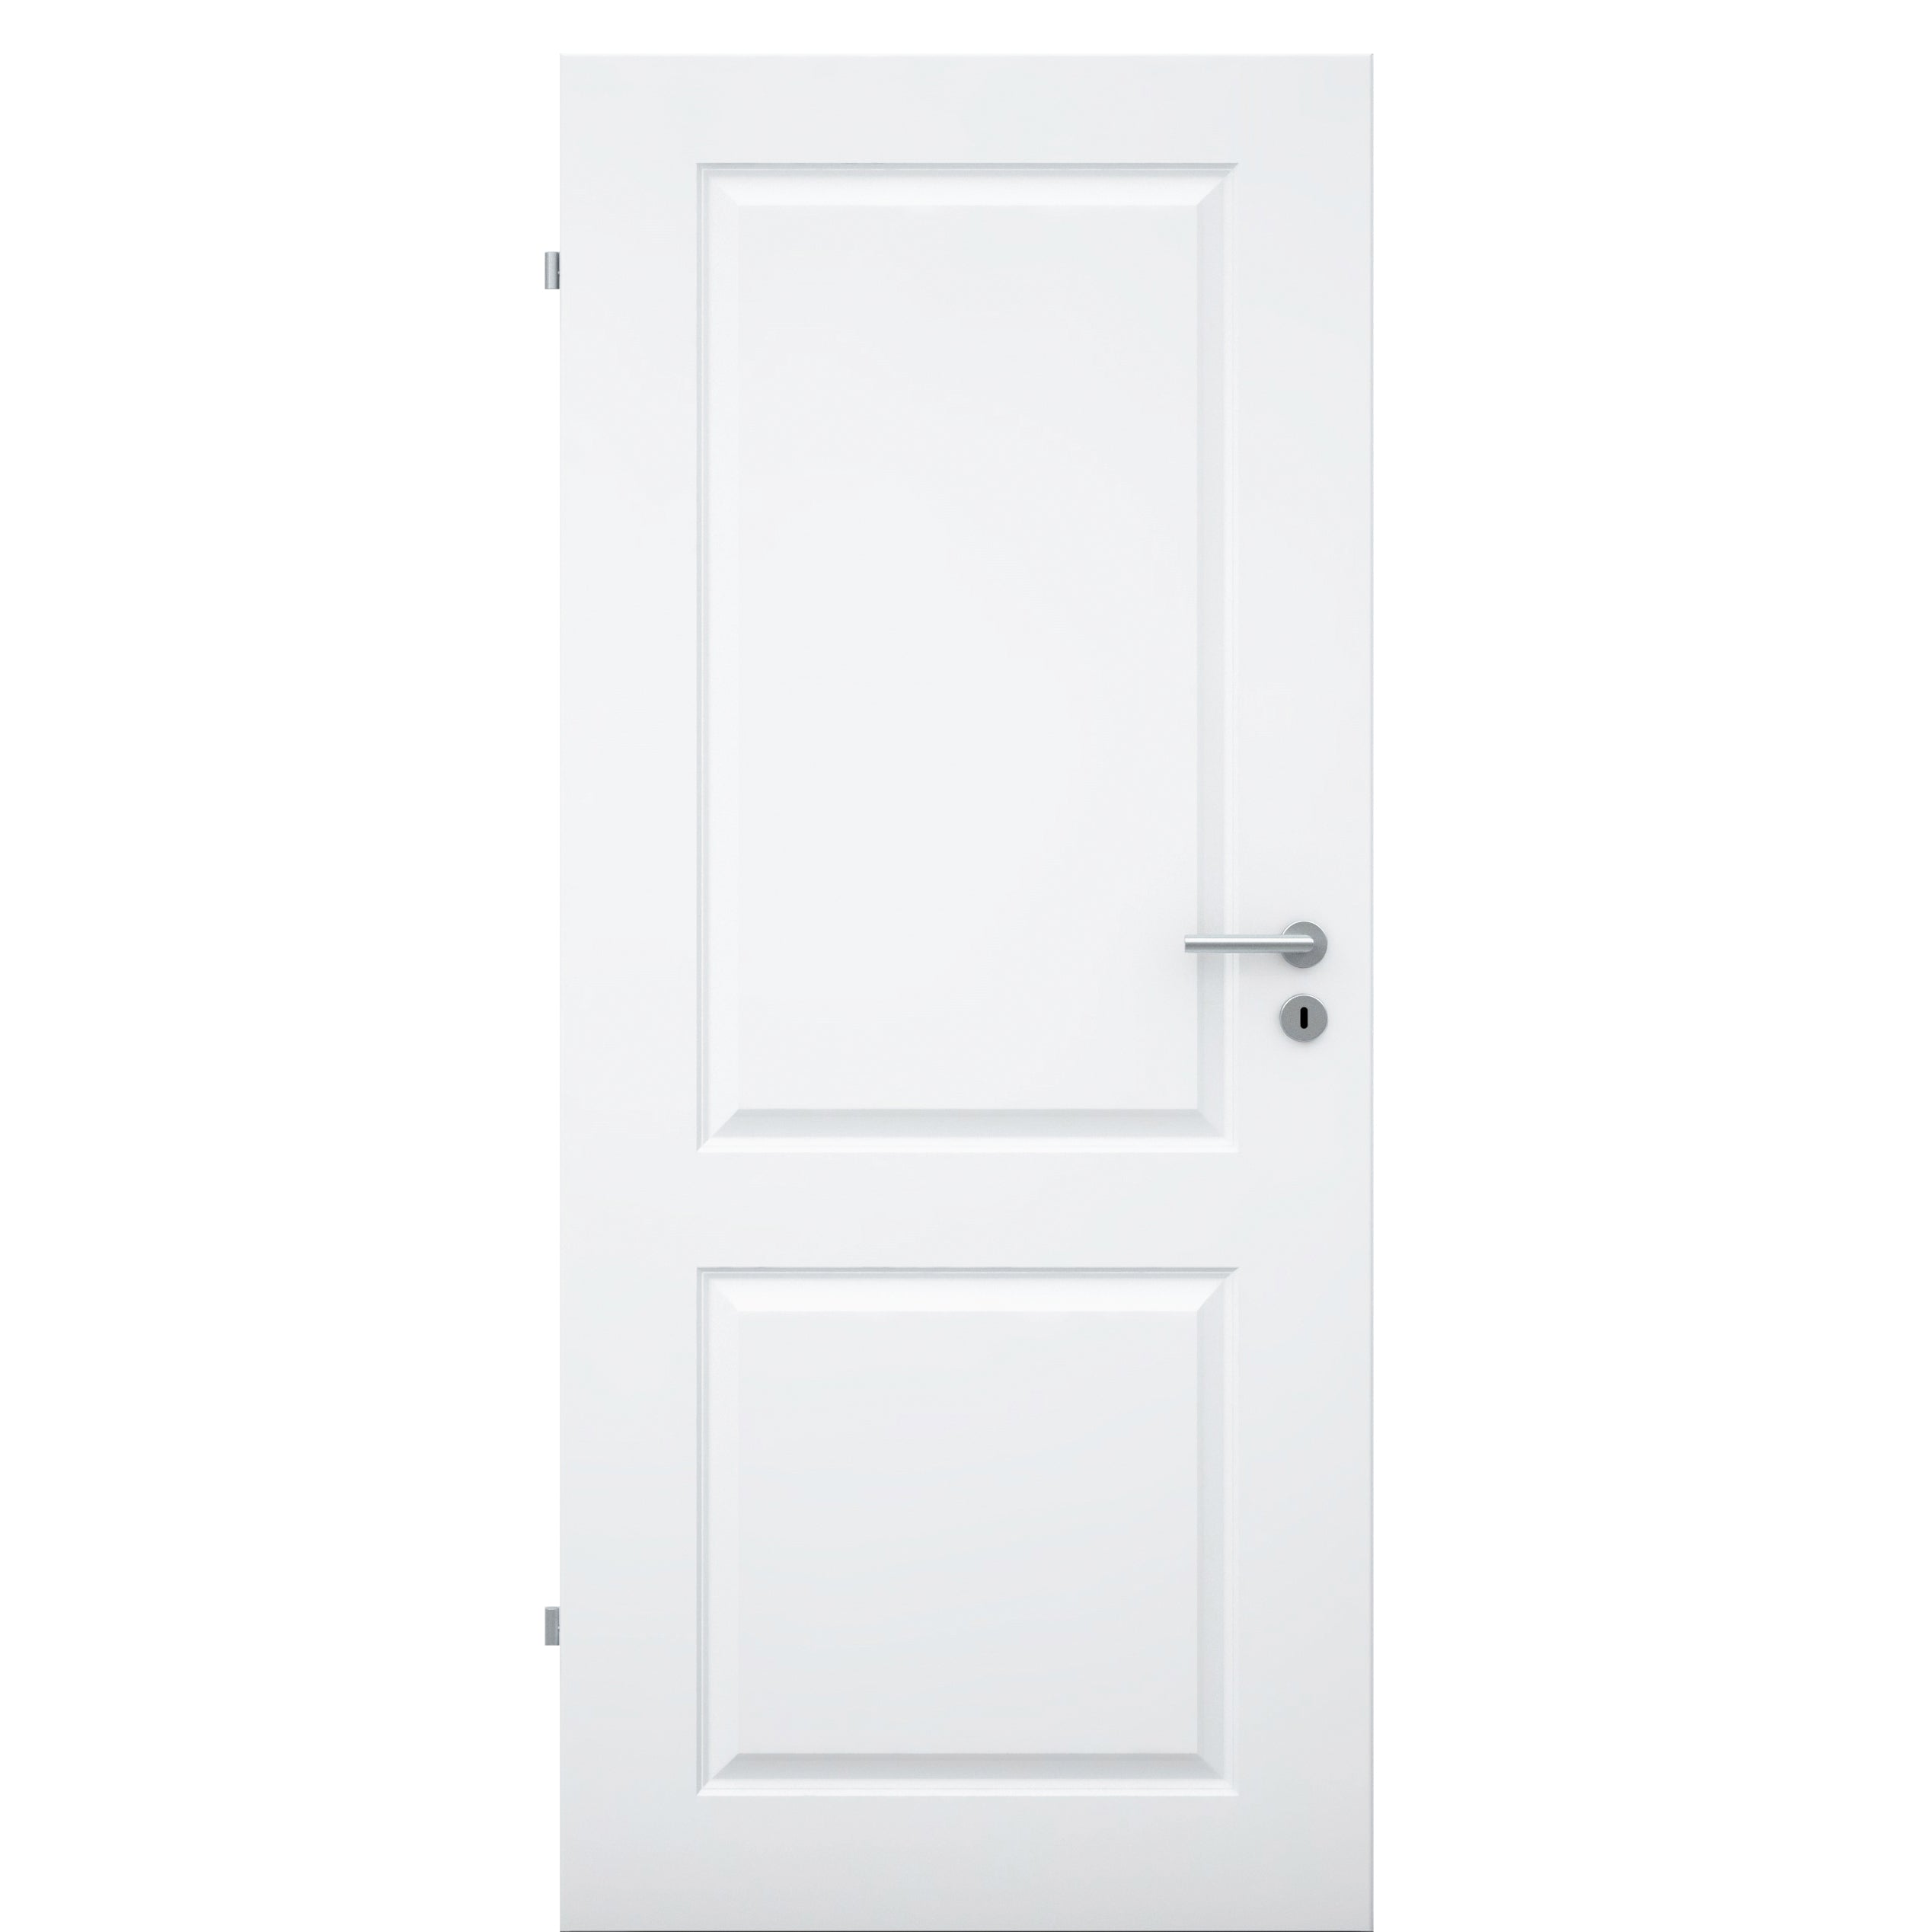 Zimmertür brillant-weiß 2 Kassetten Designkante - Modell Stiltür K23